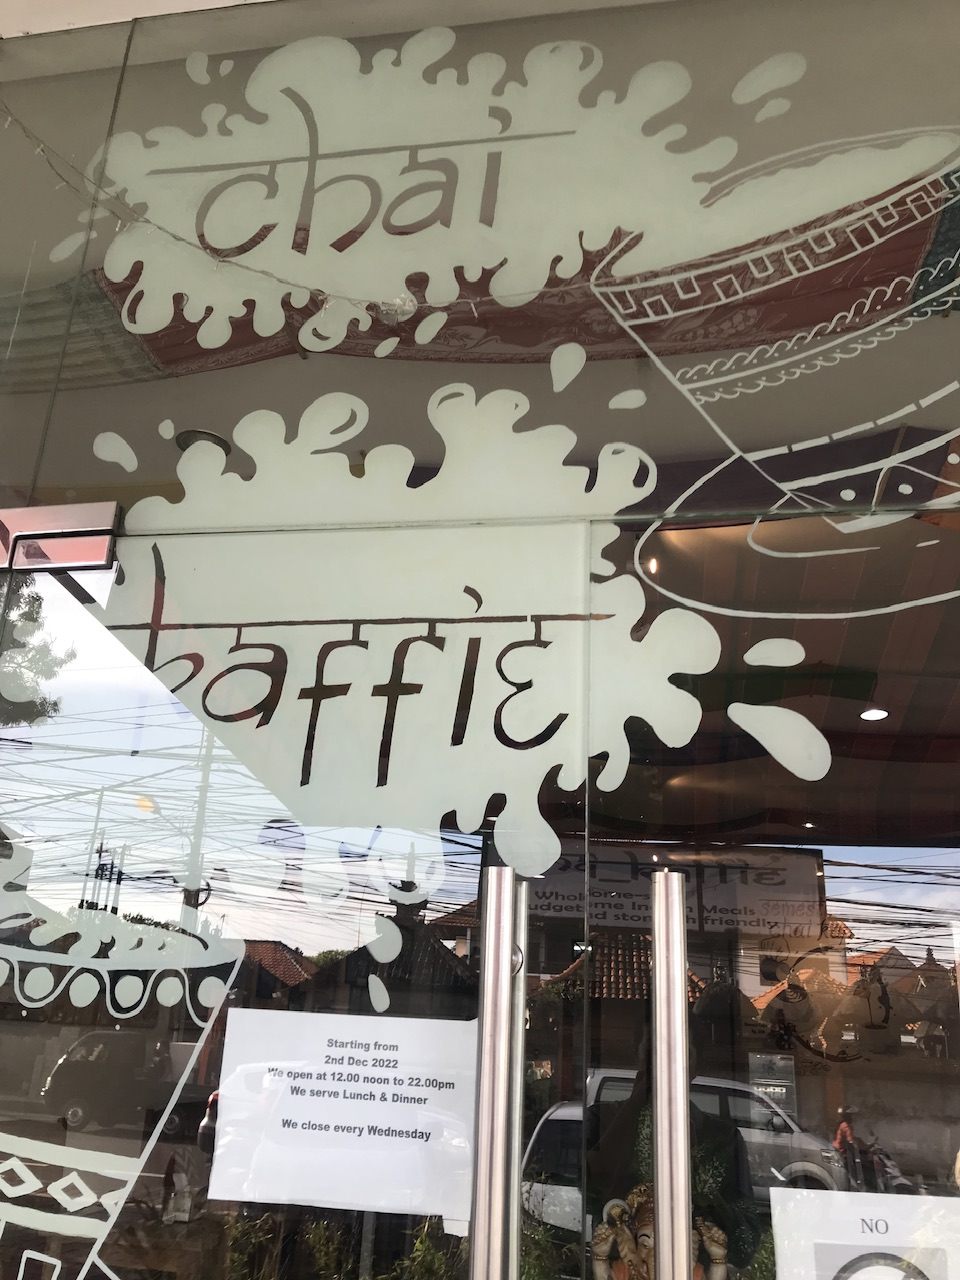 お店の名は「Chai kaffie」水曜定休